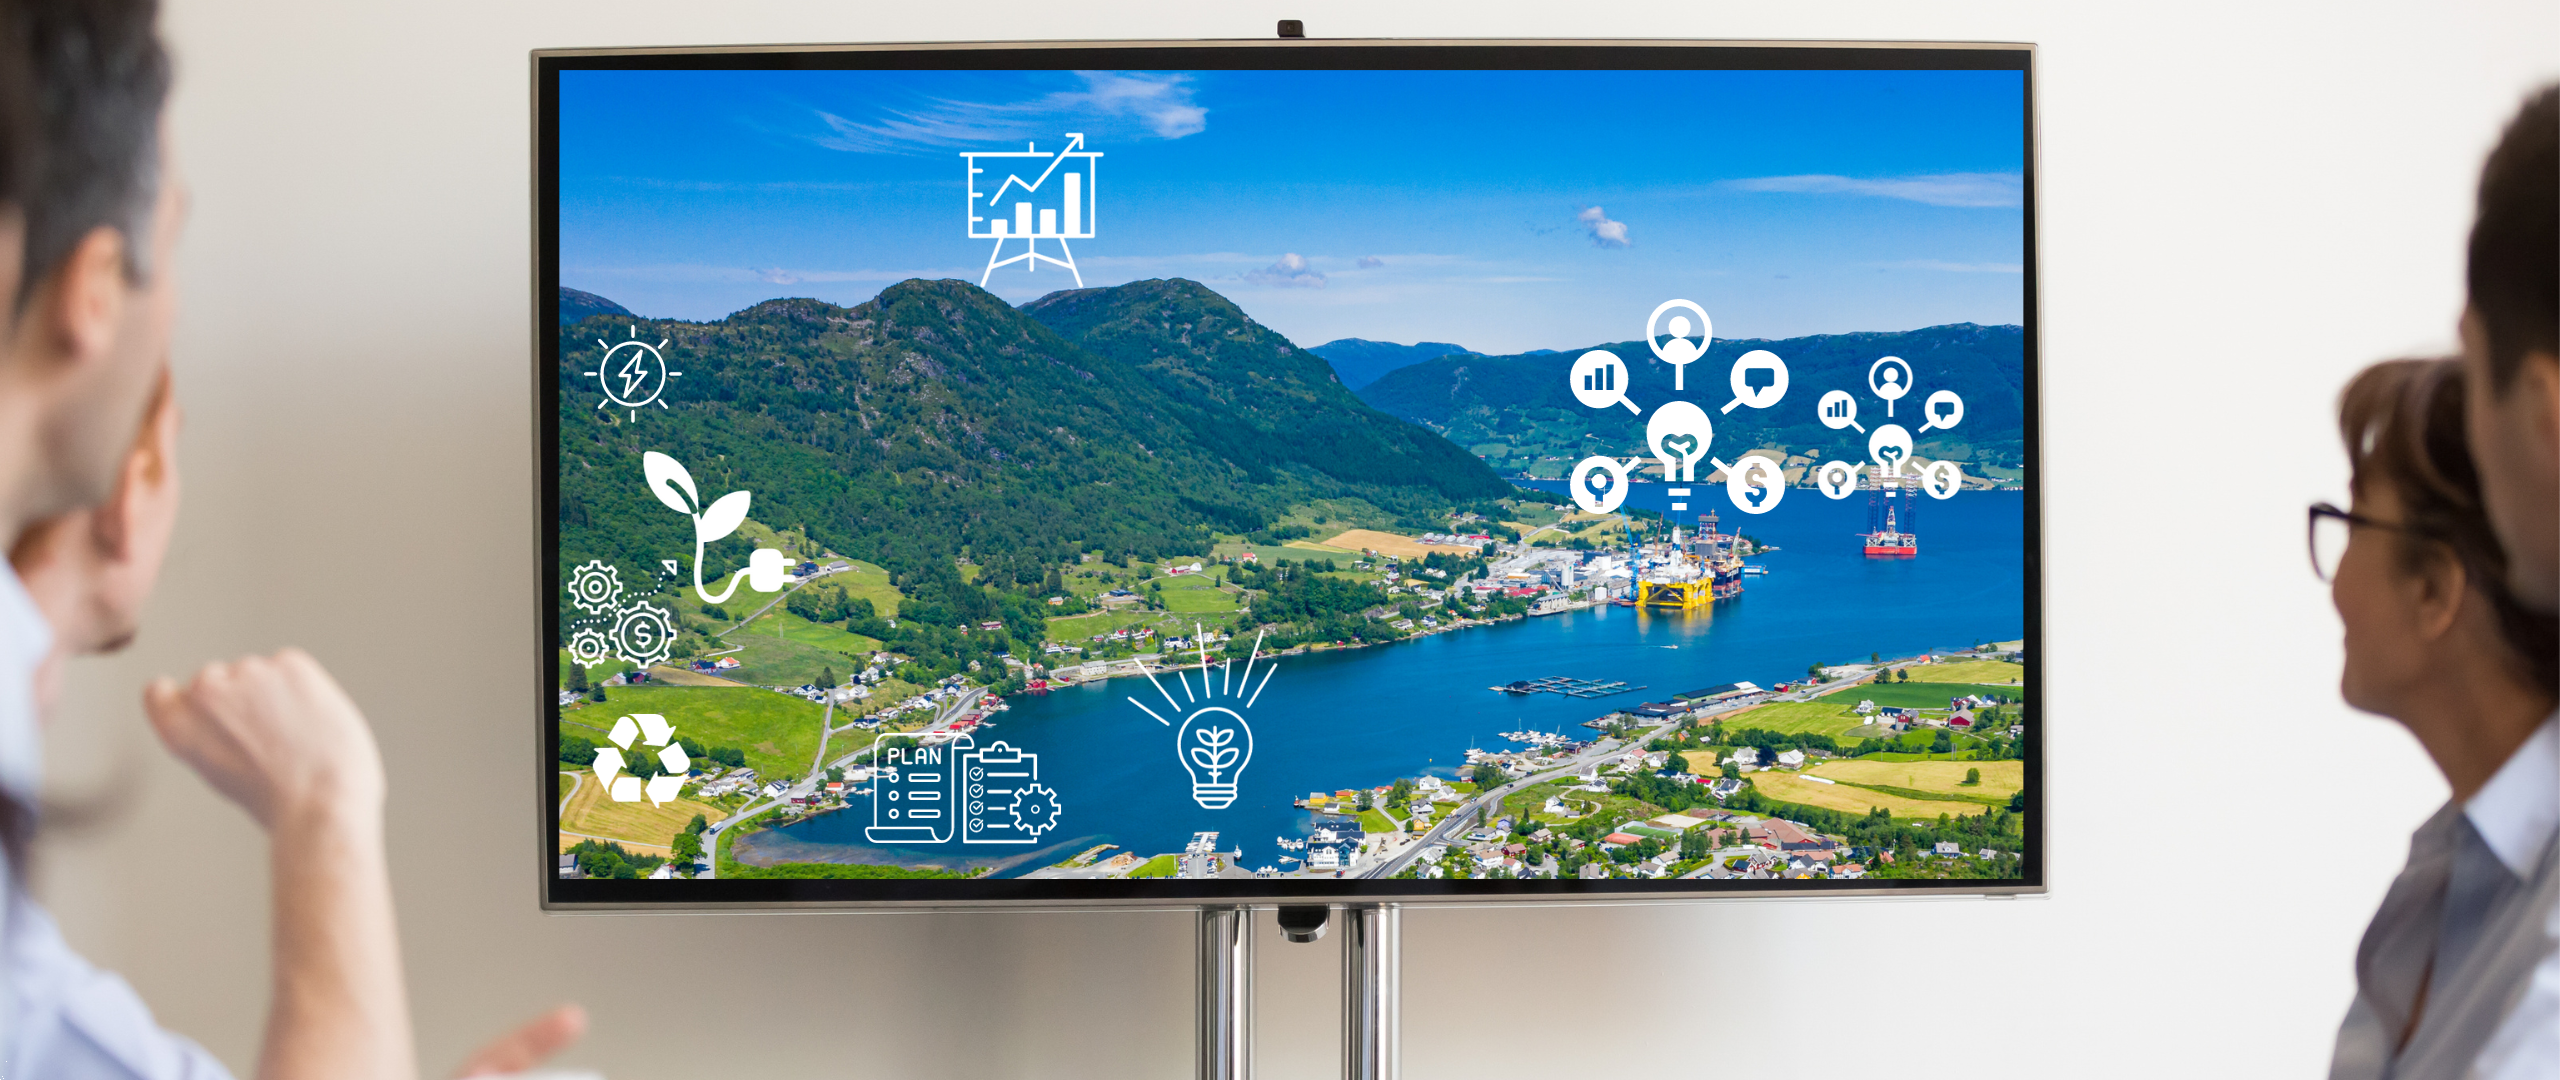 Personer i en gruppe ser på en skjerm. På skjermen er det bilde av et landskap i Rogaland og ulike symboler for bærekraft, kommunikasjon og ledelse. 